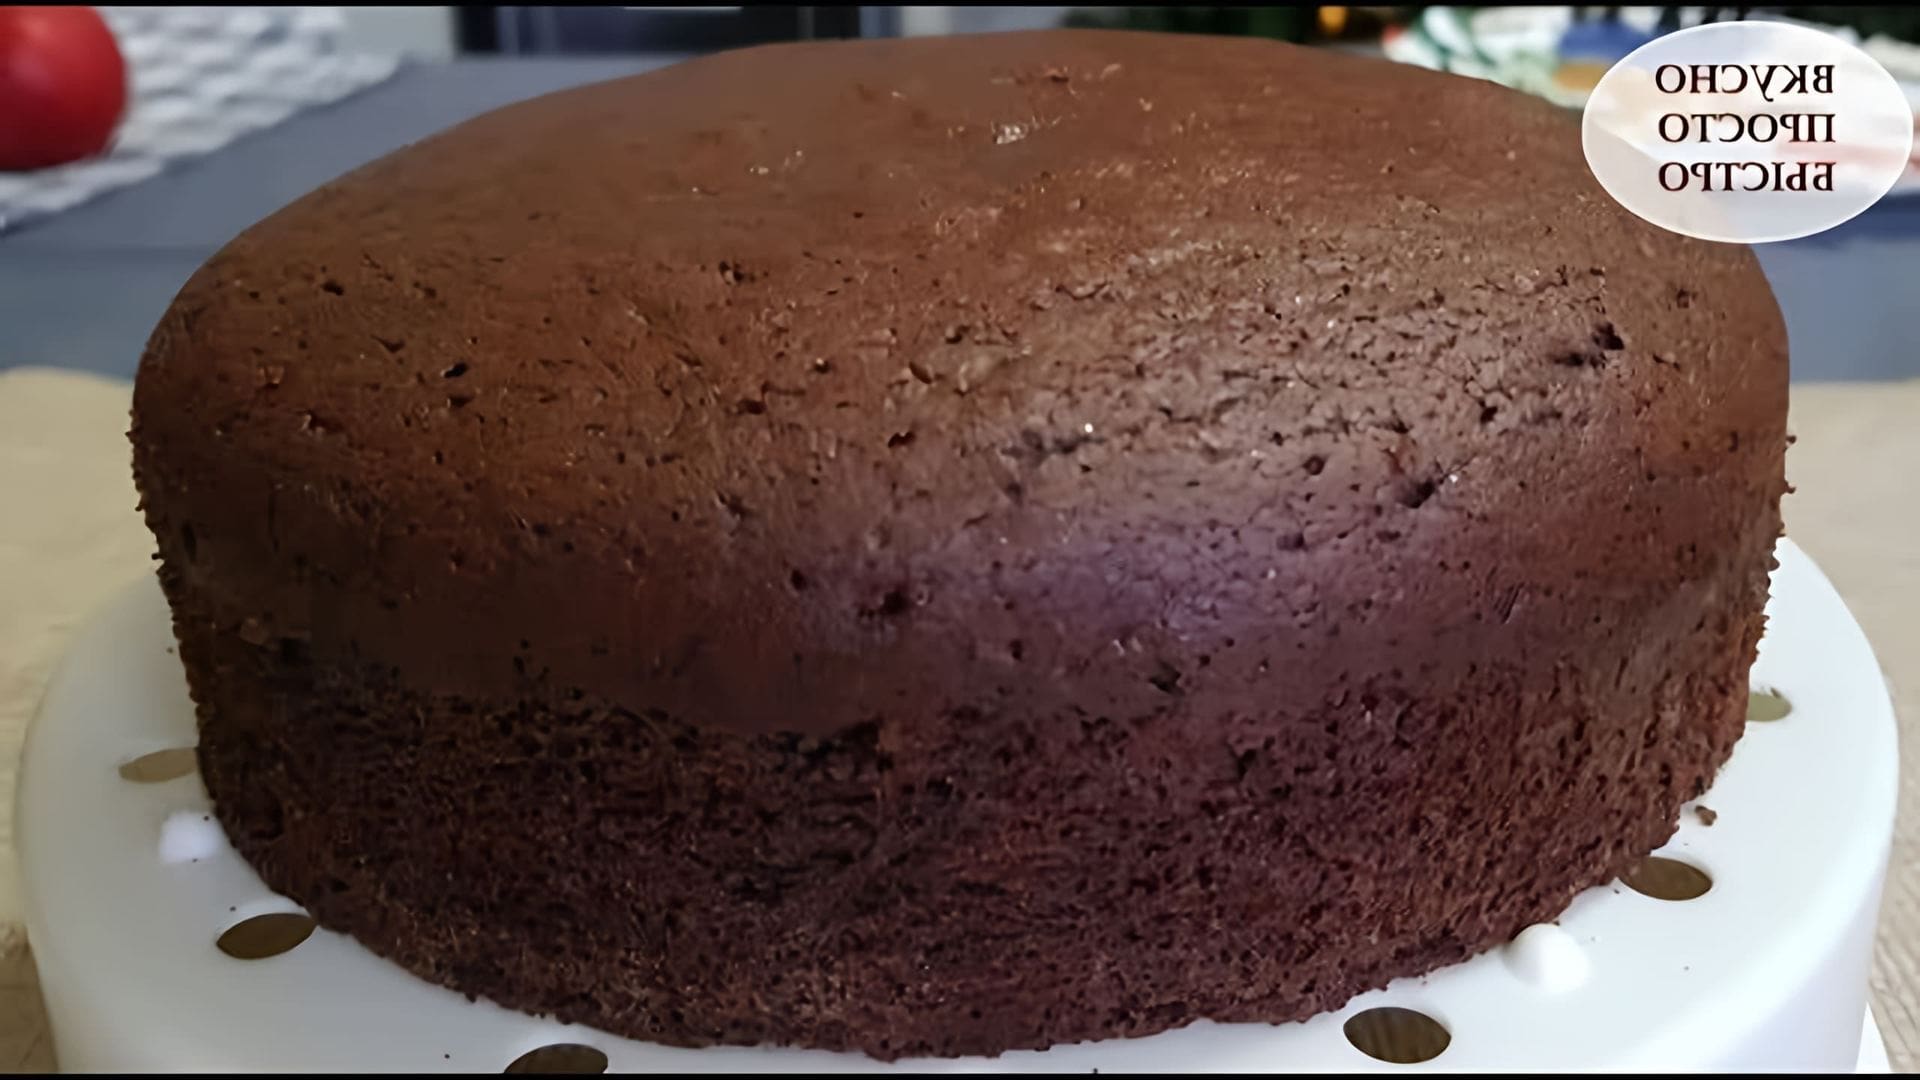 В этом видео Наталия показывает, как приготовить шоколадный бисквит для торта